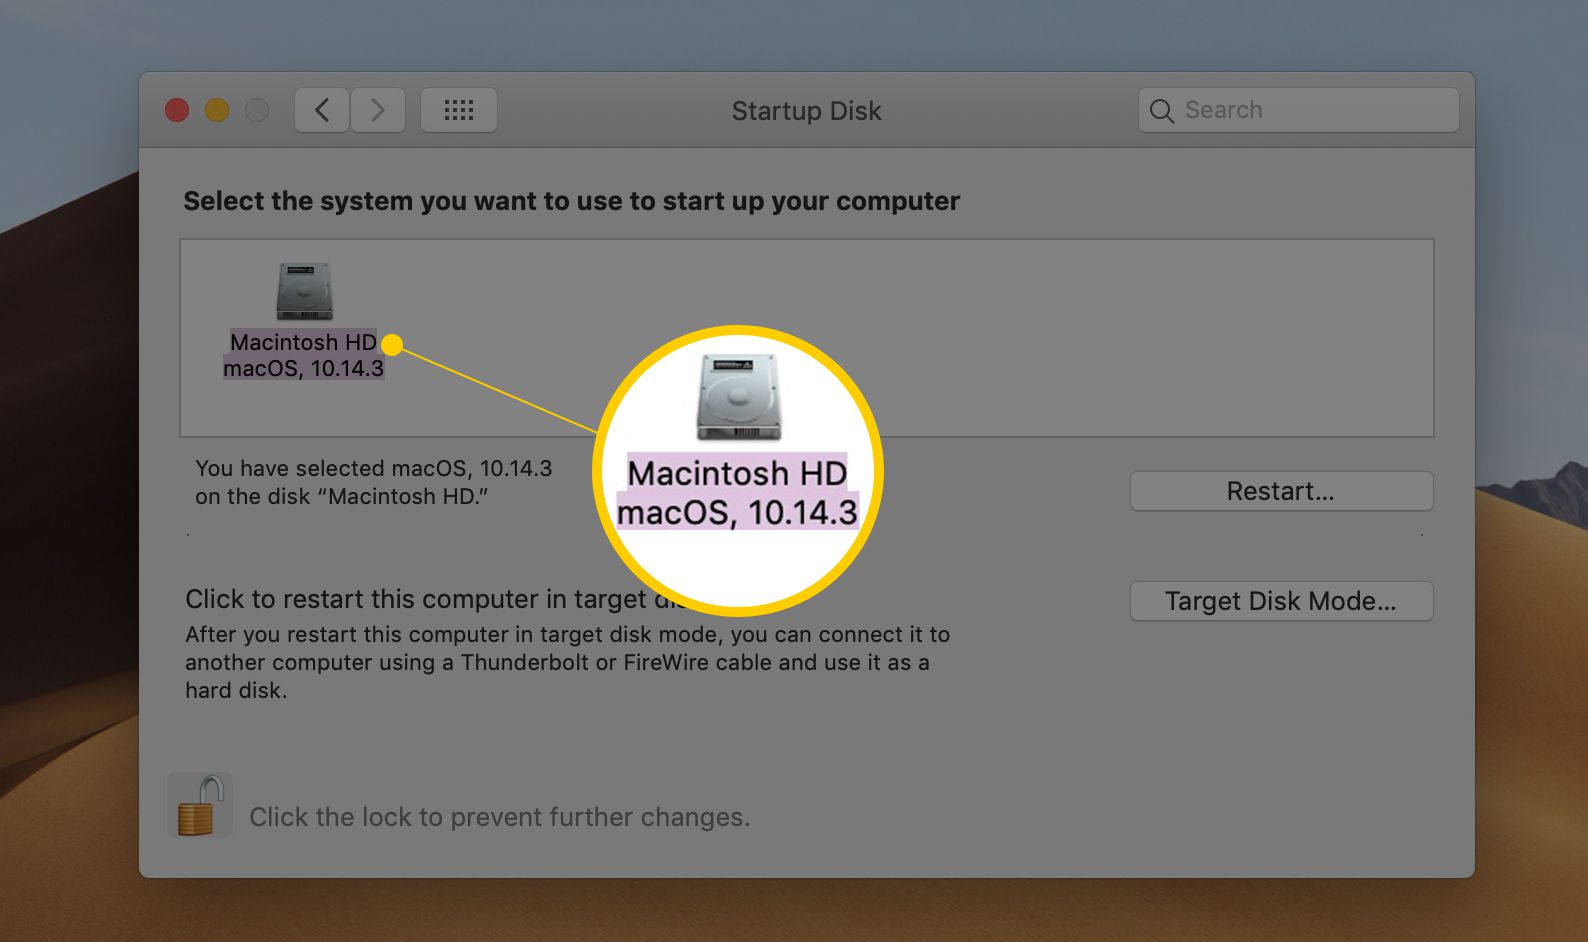 Macintosh HD je vybrán jako spouštěcí disketa